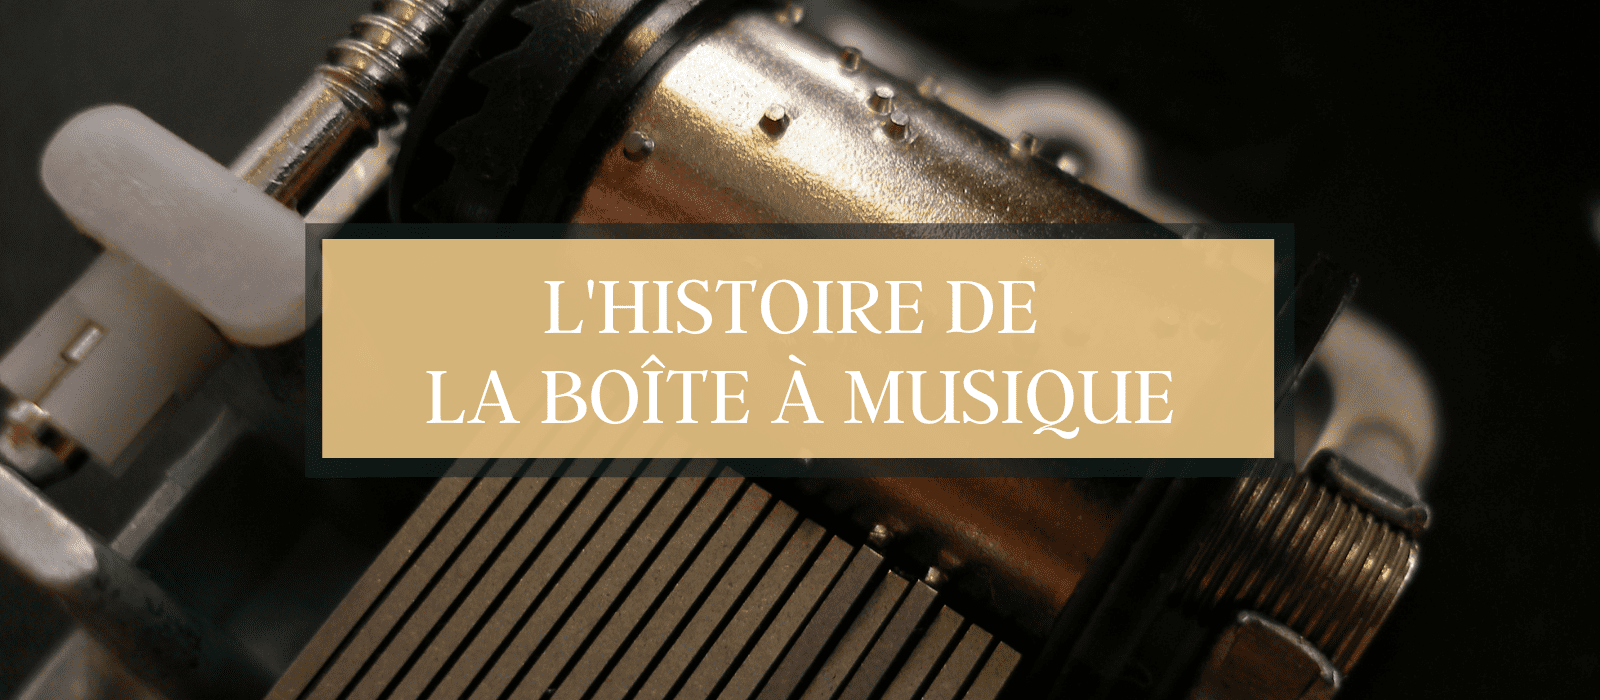 https://petite-manivelle.com/wp-content/uploads/2022/05/Lhistoire-de-la-Boite-a-Musique.png